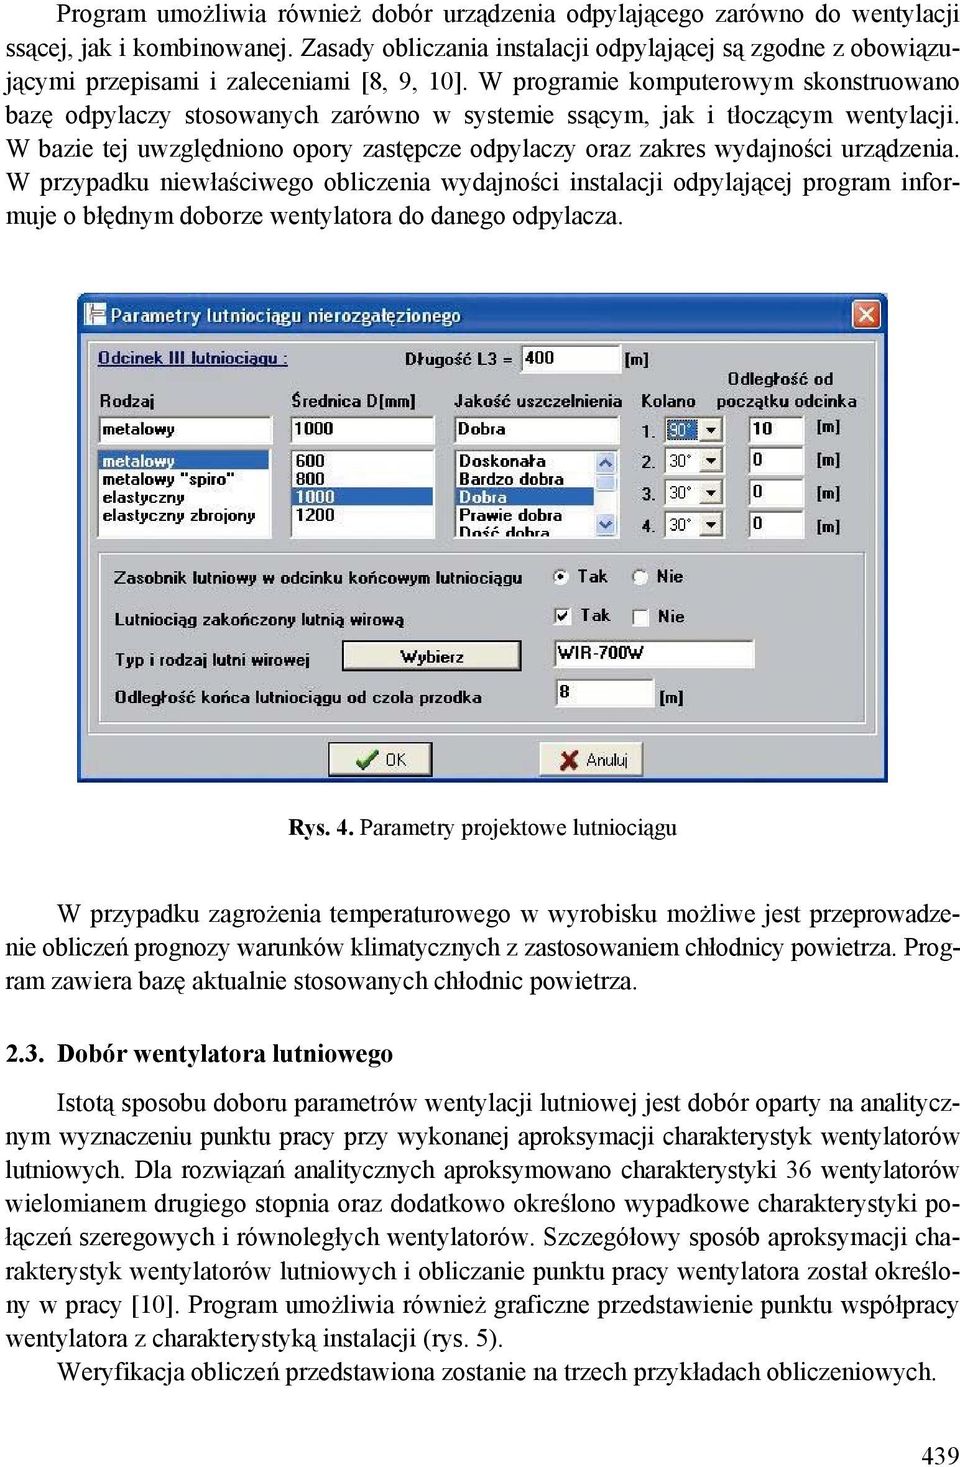 W programie komputerowym skonstruowano bazę odpylaczy stosowanych zarówno w systemie ssącym, jak i tłoczącym wentylacji.